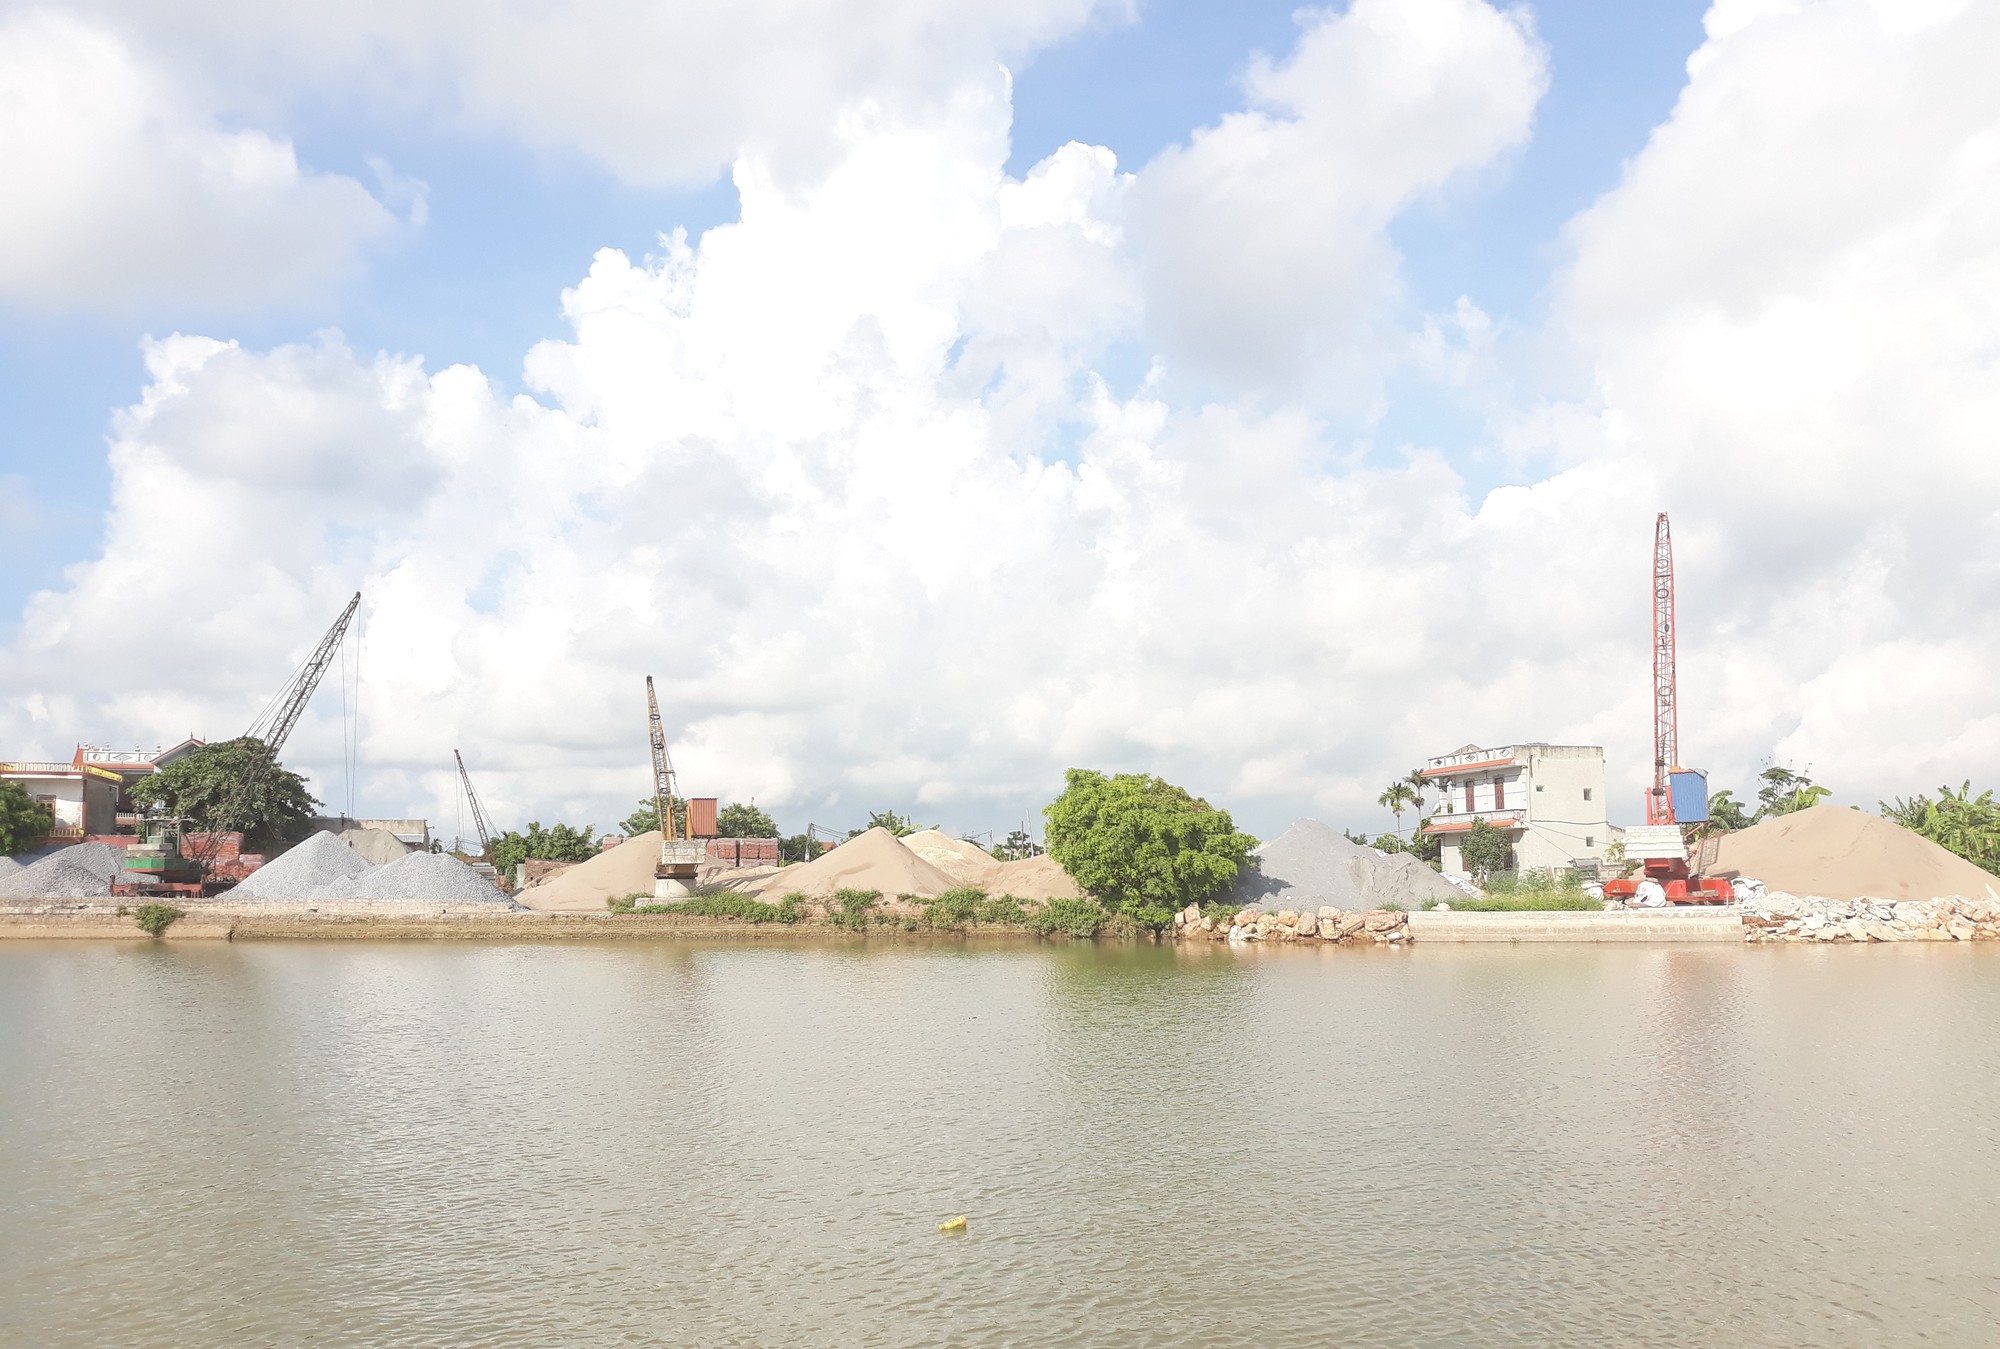 Lãnh đạo tỉnh Nam Định yêu cầu xử lý dứt điểm các vi phạm đê điều trước mùa mưa bão - Ảnh 1.